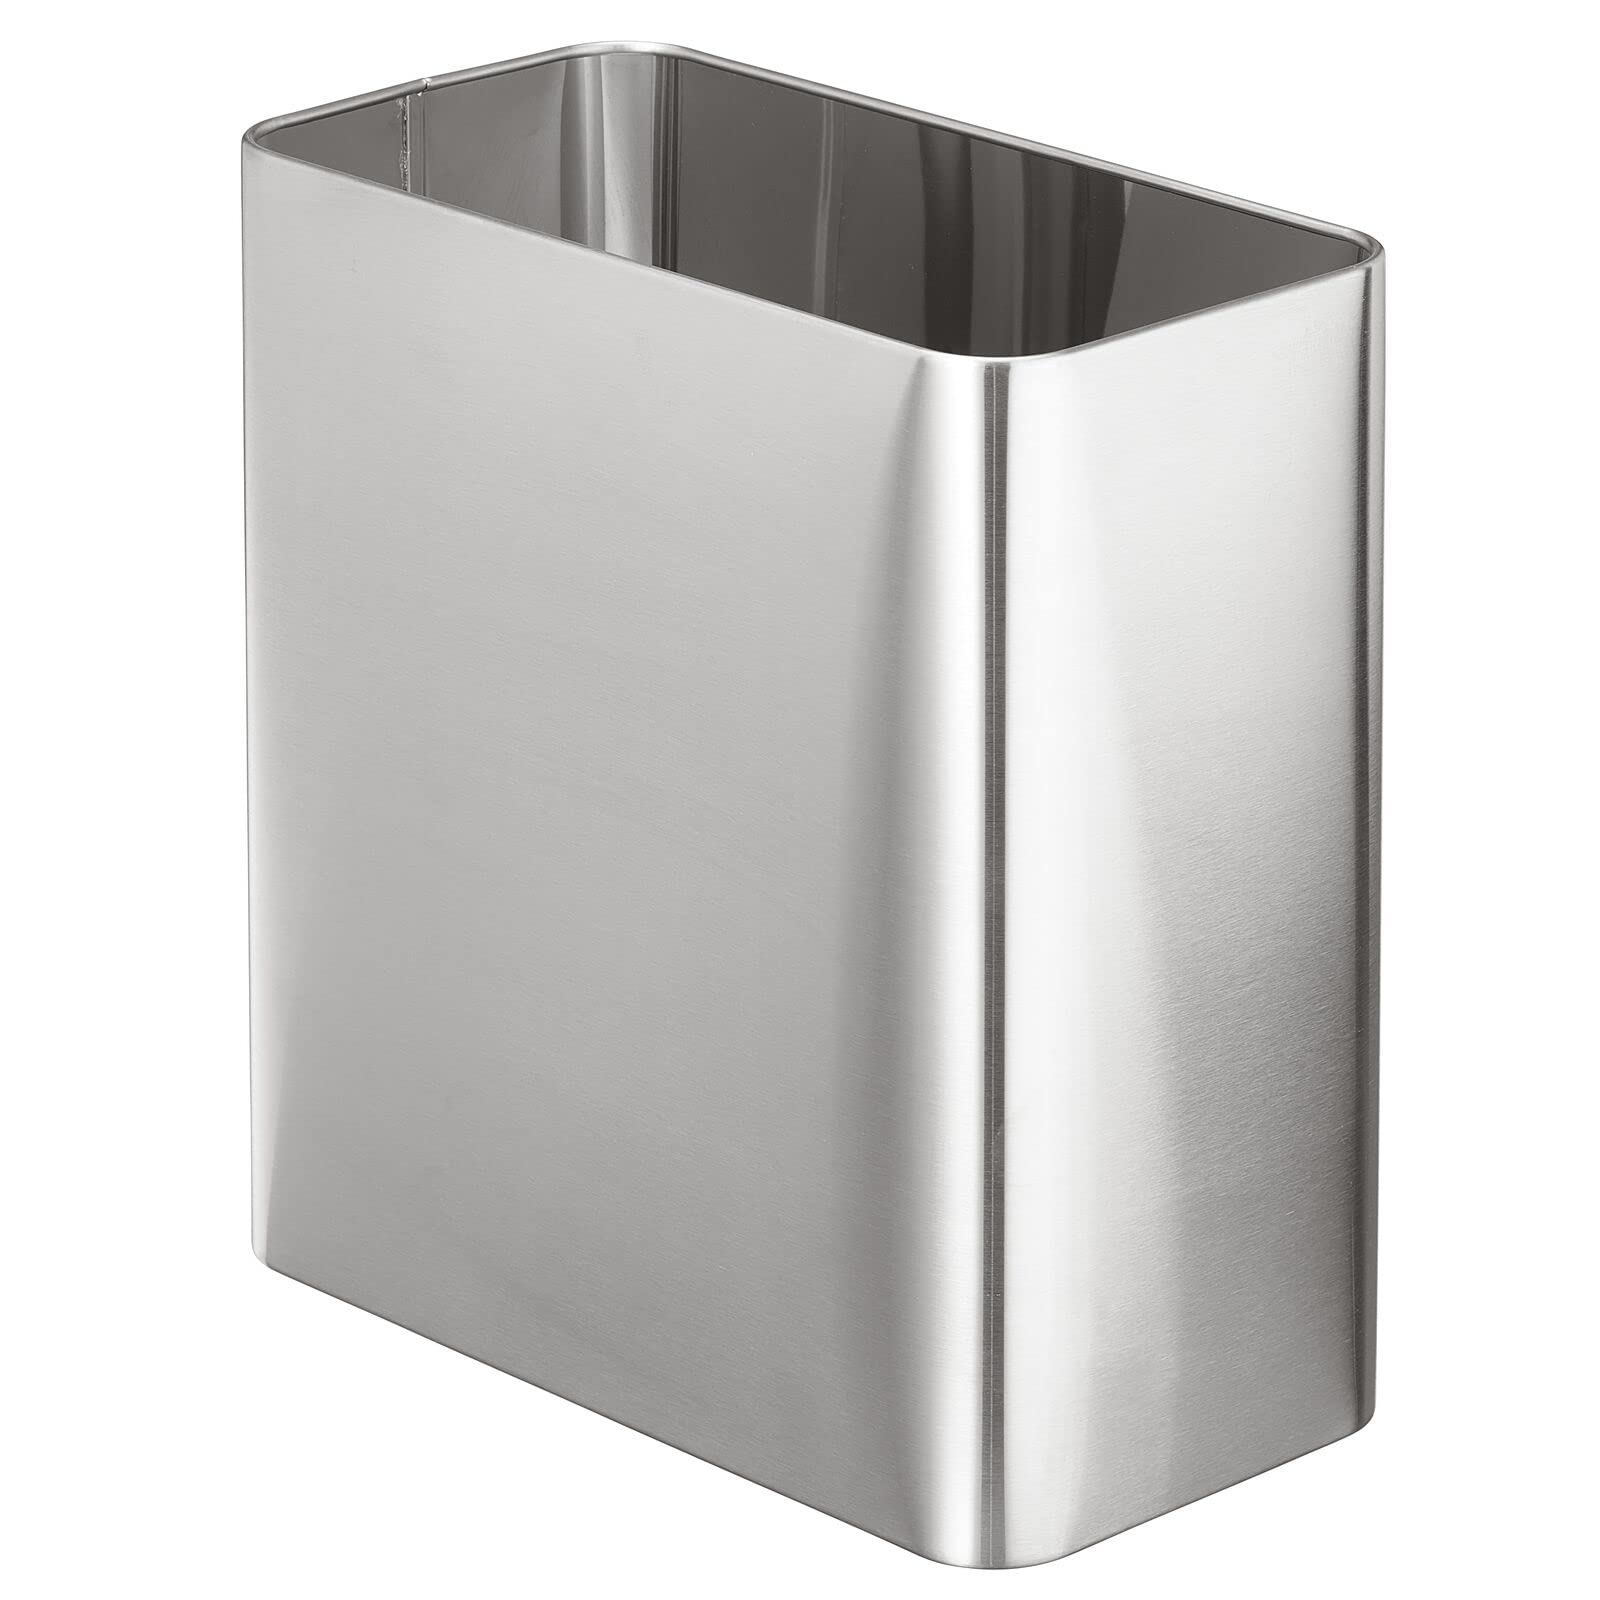 mDesign Stainless Steel Slim Rectangular Modern Metal 2.6 Gallon/10 Liter Trash Can Wastebasket